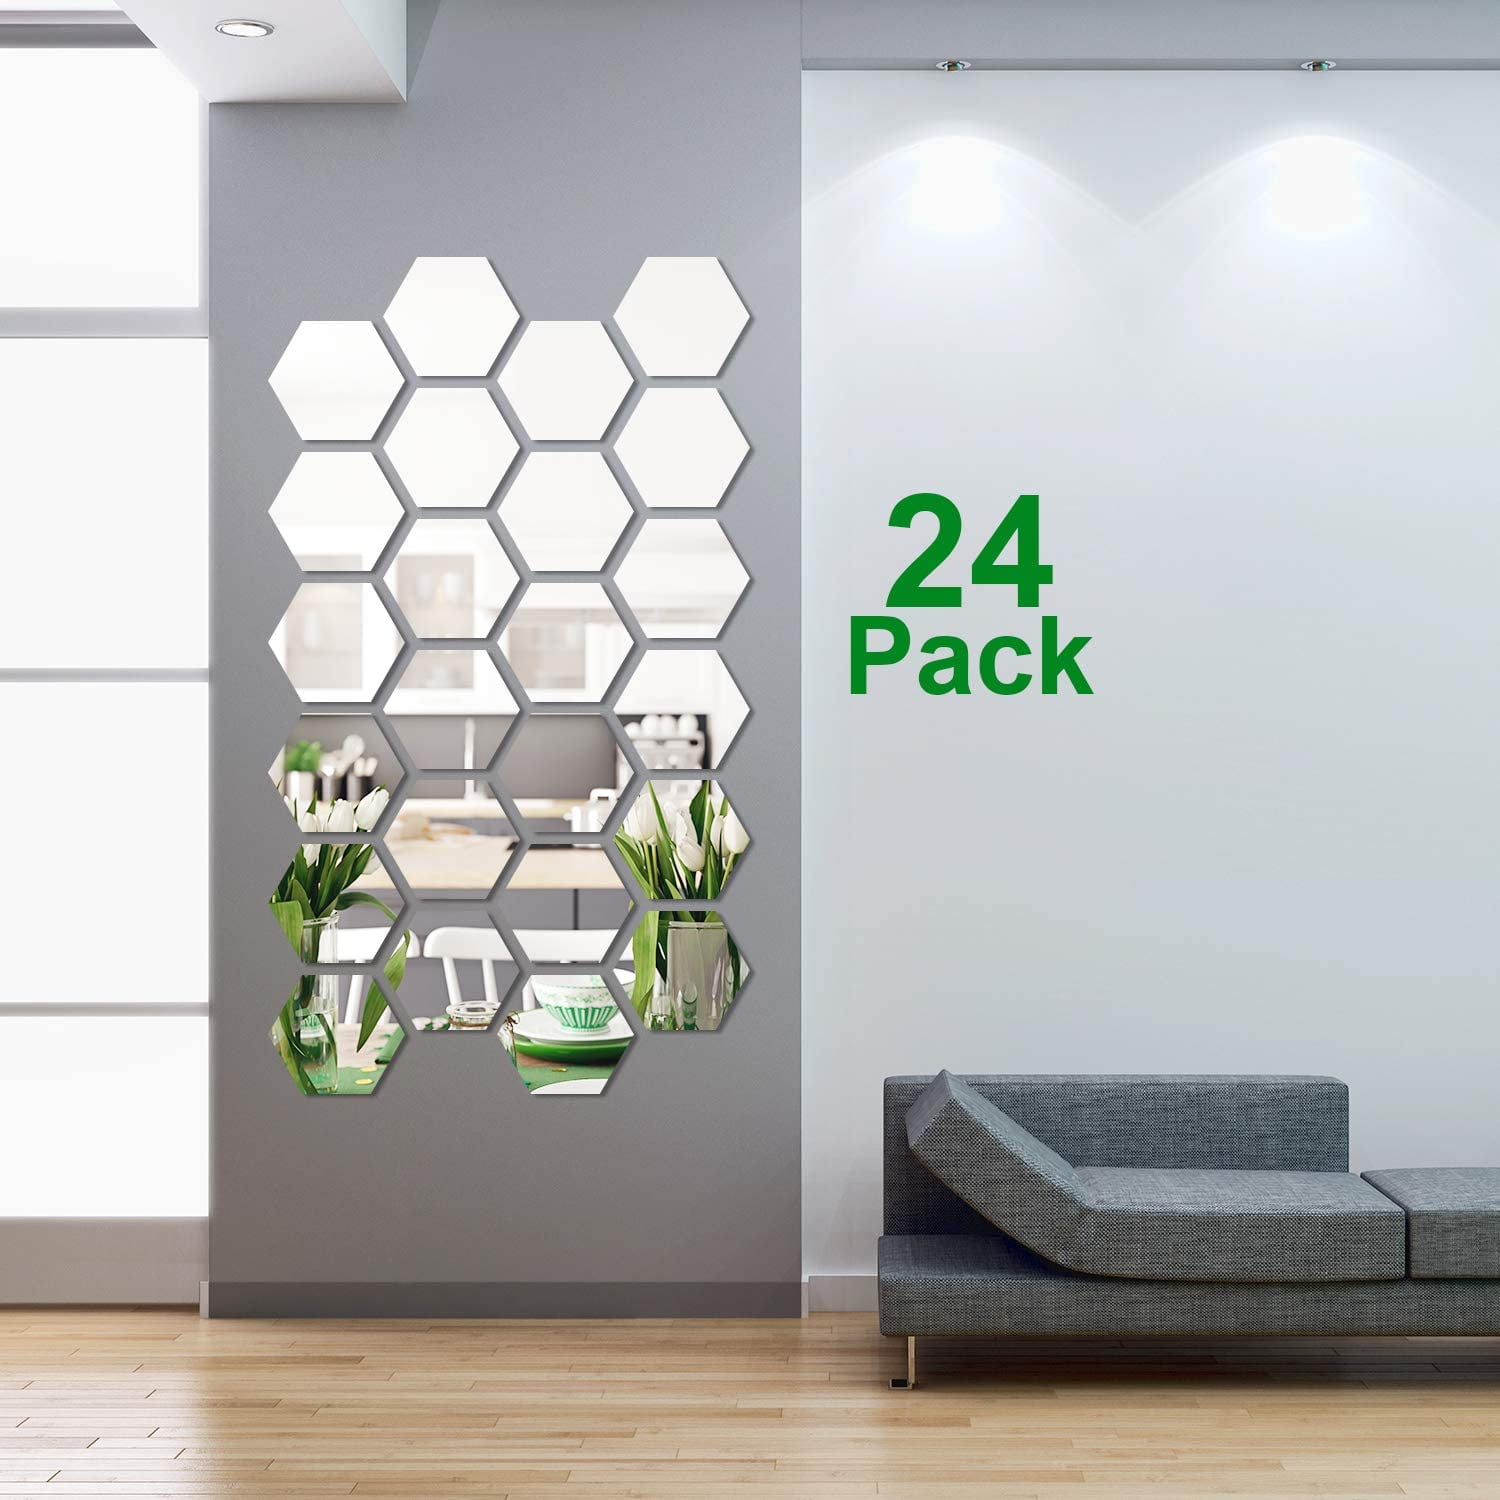 Details about   3D MIRROR Hexagon Vinyl Removable WALL Sticker Decal Home DECOR Art DIY Craft QK